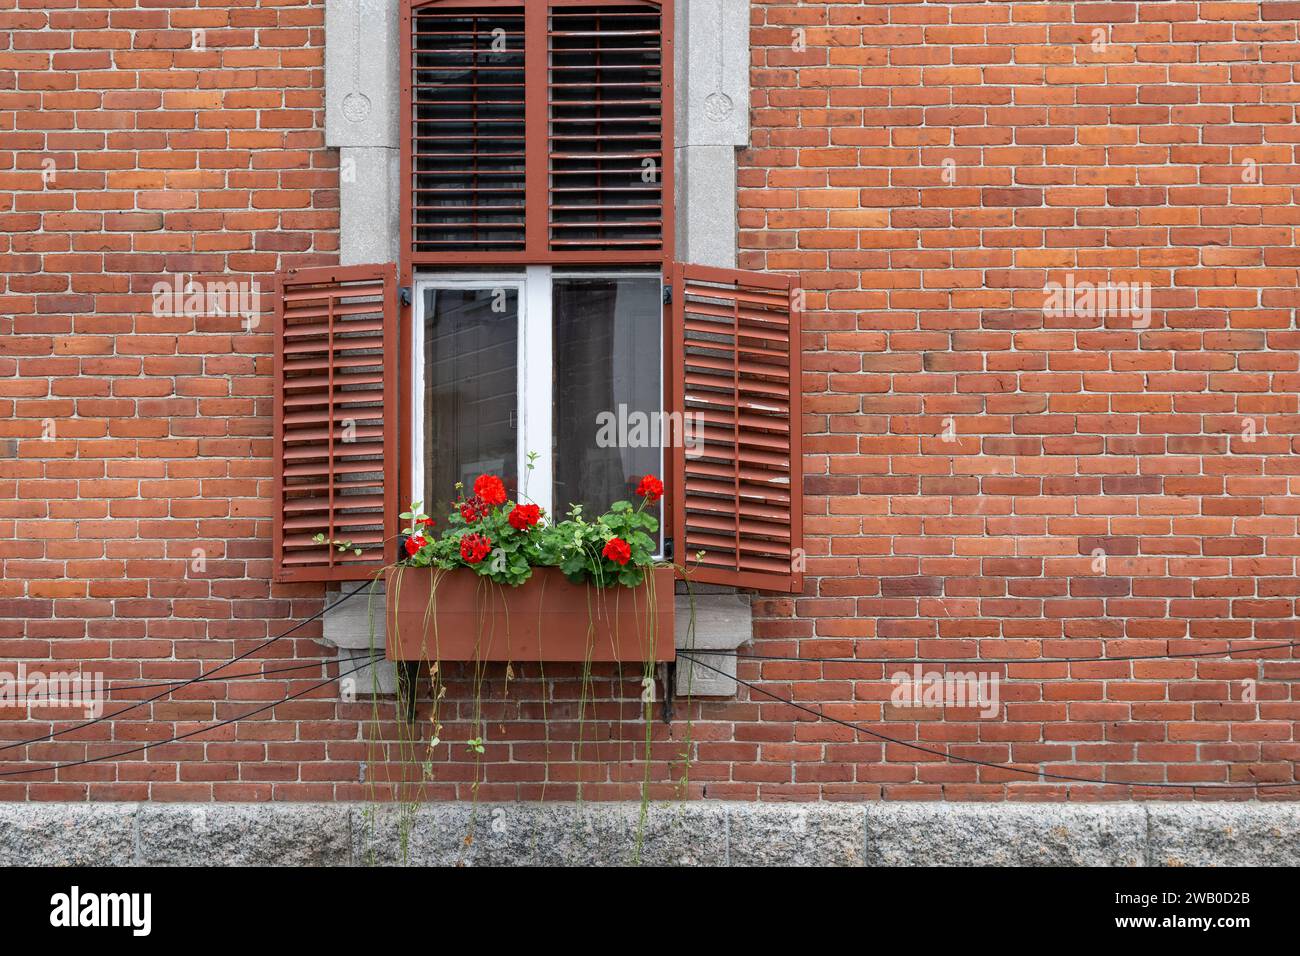 Le mur extérieur d'un immeuble d'appartements en briques rouges vintage avec une fenêtre décorée blanche. Il y a une boîte à fleurs en bois avec des fleurs de géranium rouge Banque D'Images